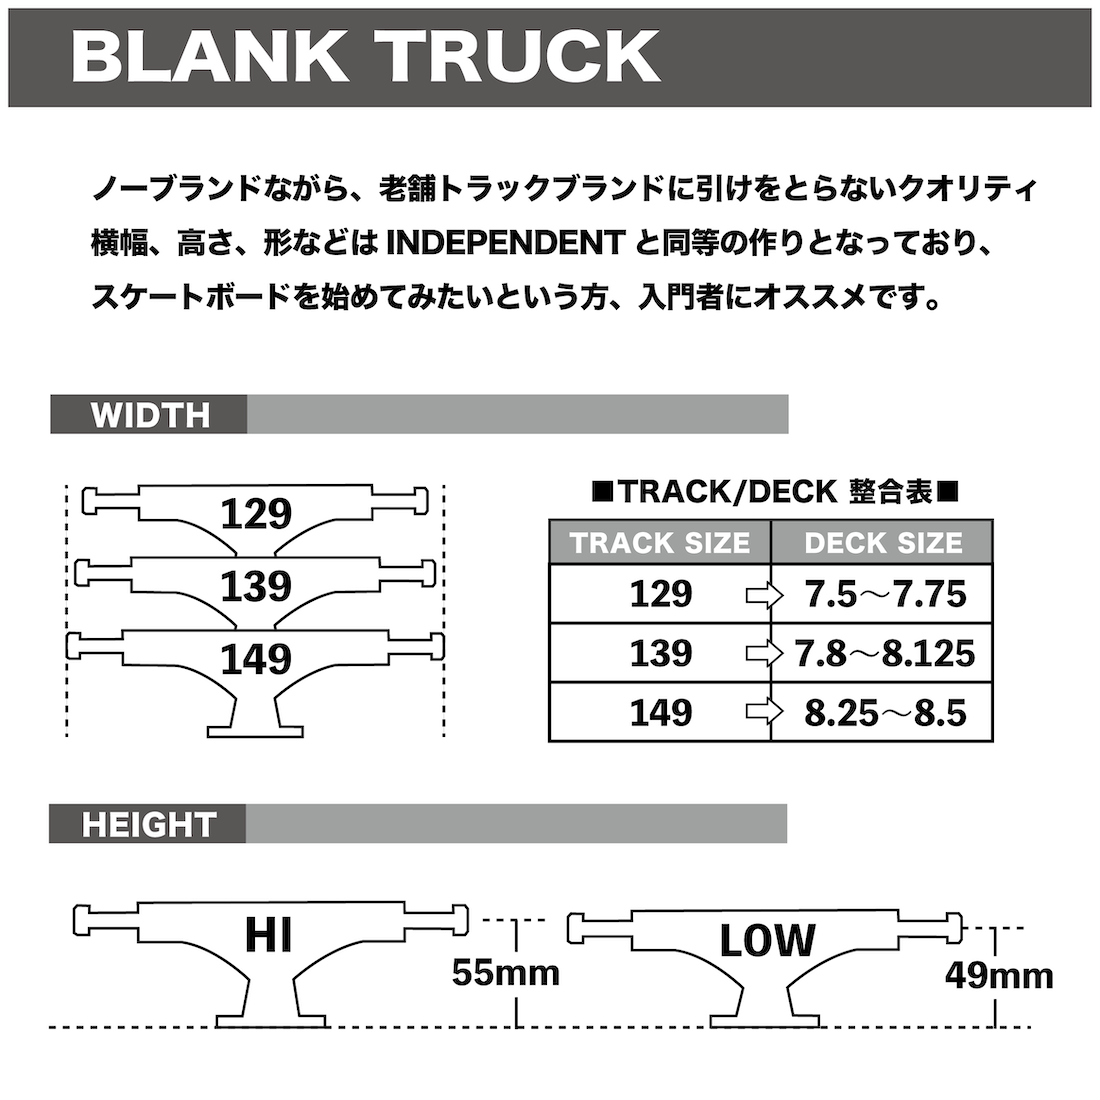 【Blank Truck】 Standard -139